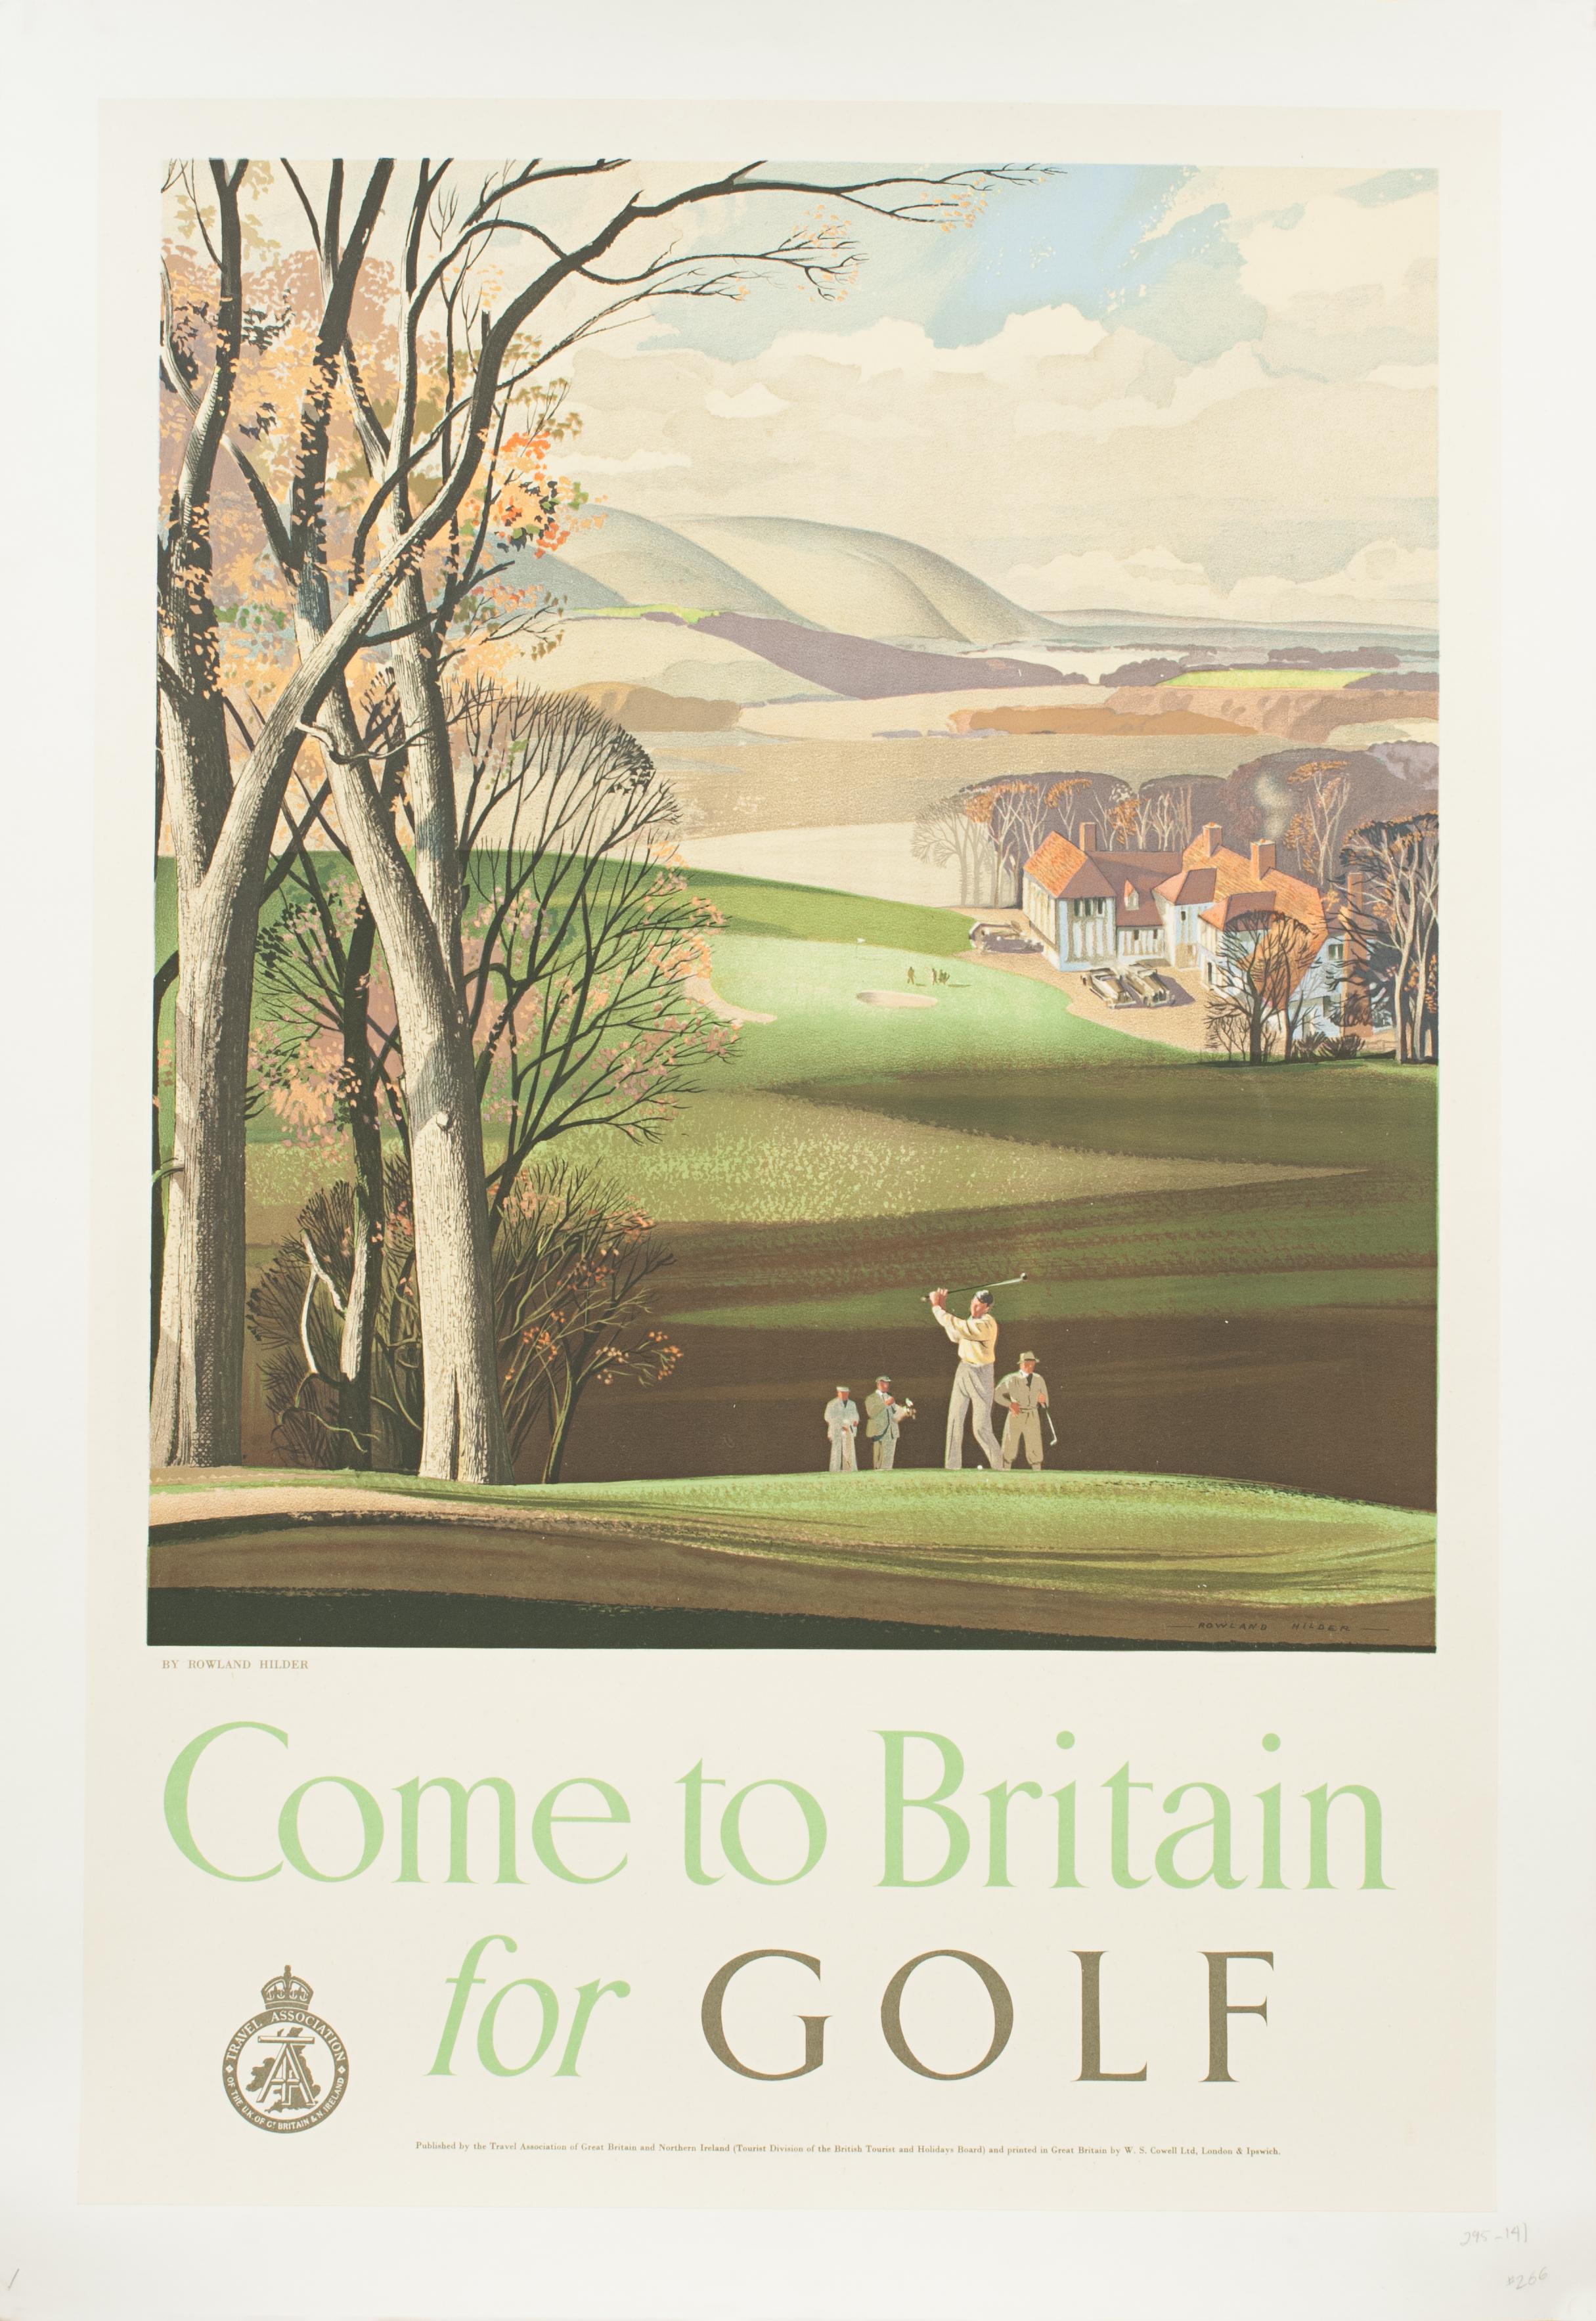 Vintage-Golf-Reiseplakat, 'Come to Britain for Golf' von Roland Hilder.
Ein auffallendes Golfplakat von Rowland Hilder mit dem Titel 